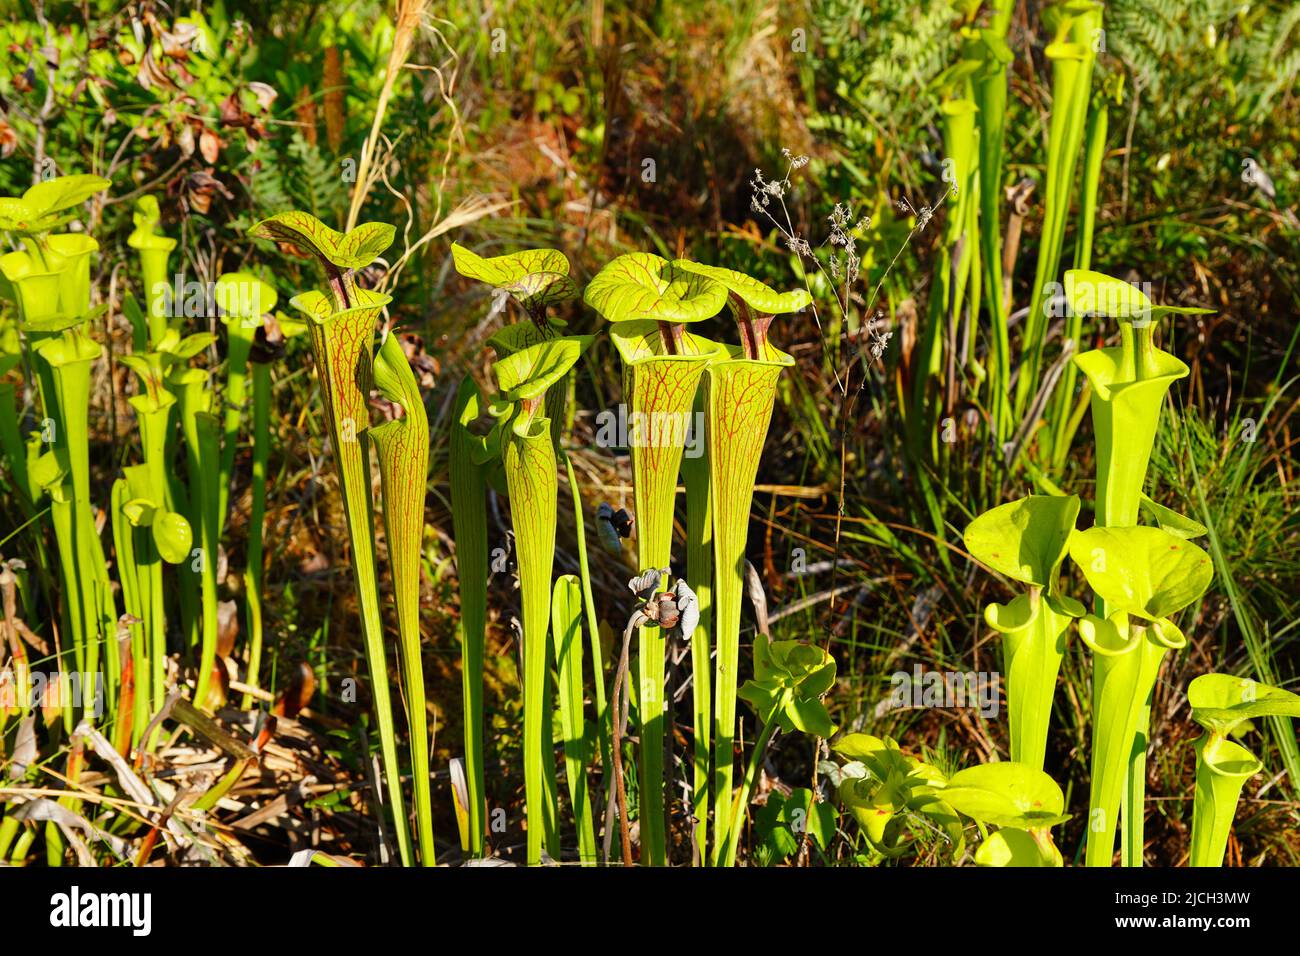 Planta de Pitcher Amarillo, Sarracenia flava, una planta carnívora que atrapa y digiere insectos en sus hojas de tipo cántaro. Foto de stock